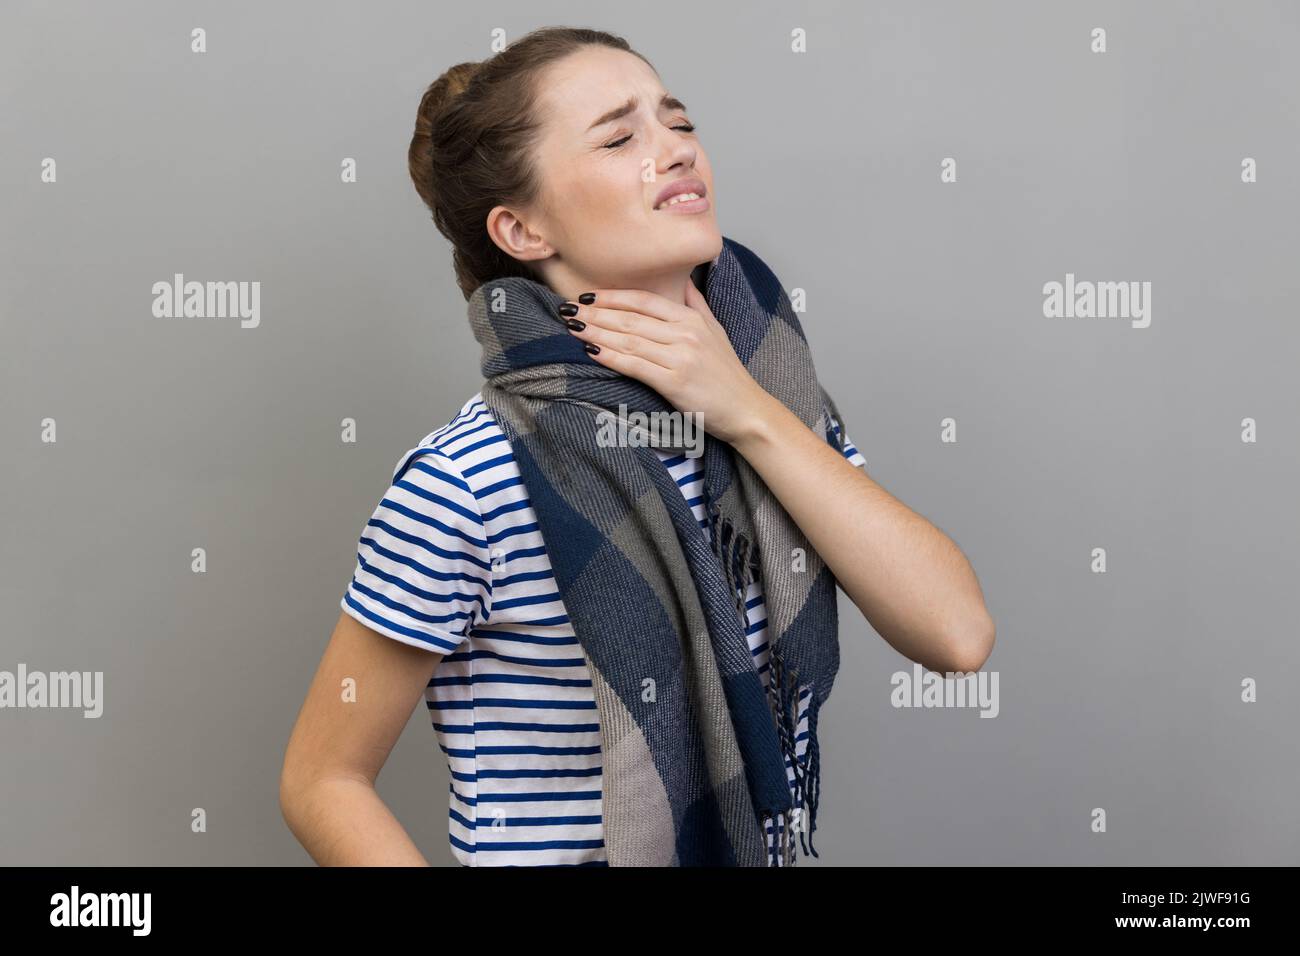 Kranke Frau im T-Shirt und in Schal gehüllt, berührt den Hals, leidet an Halsschmerzen, kann nicht gut atmen, würgt und grinst Gesicht, fühlt sich unwohl. Innenaufnahme des Studios isoliert auf grauem Hintergrund. Stockfoto